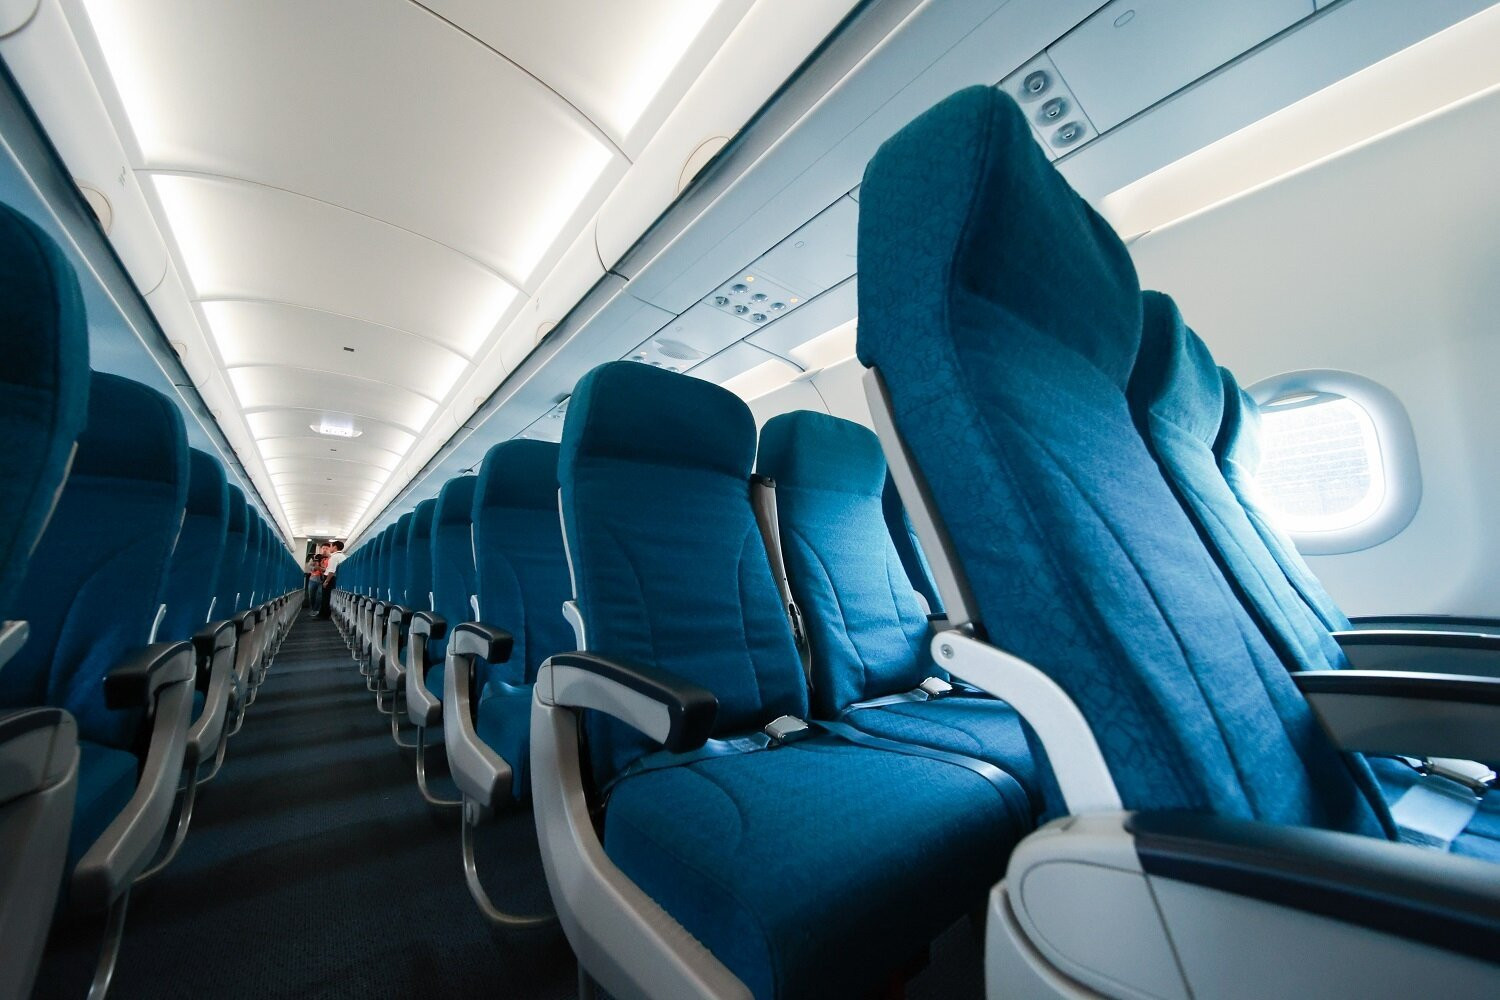 Airbus A320neo mang đến trải nghiệm bay êm ái, thoải mái cho hành khách và góp phần bảo vệ môi trường.